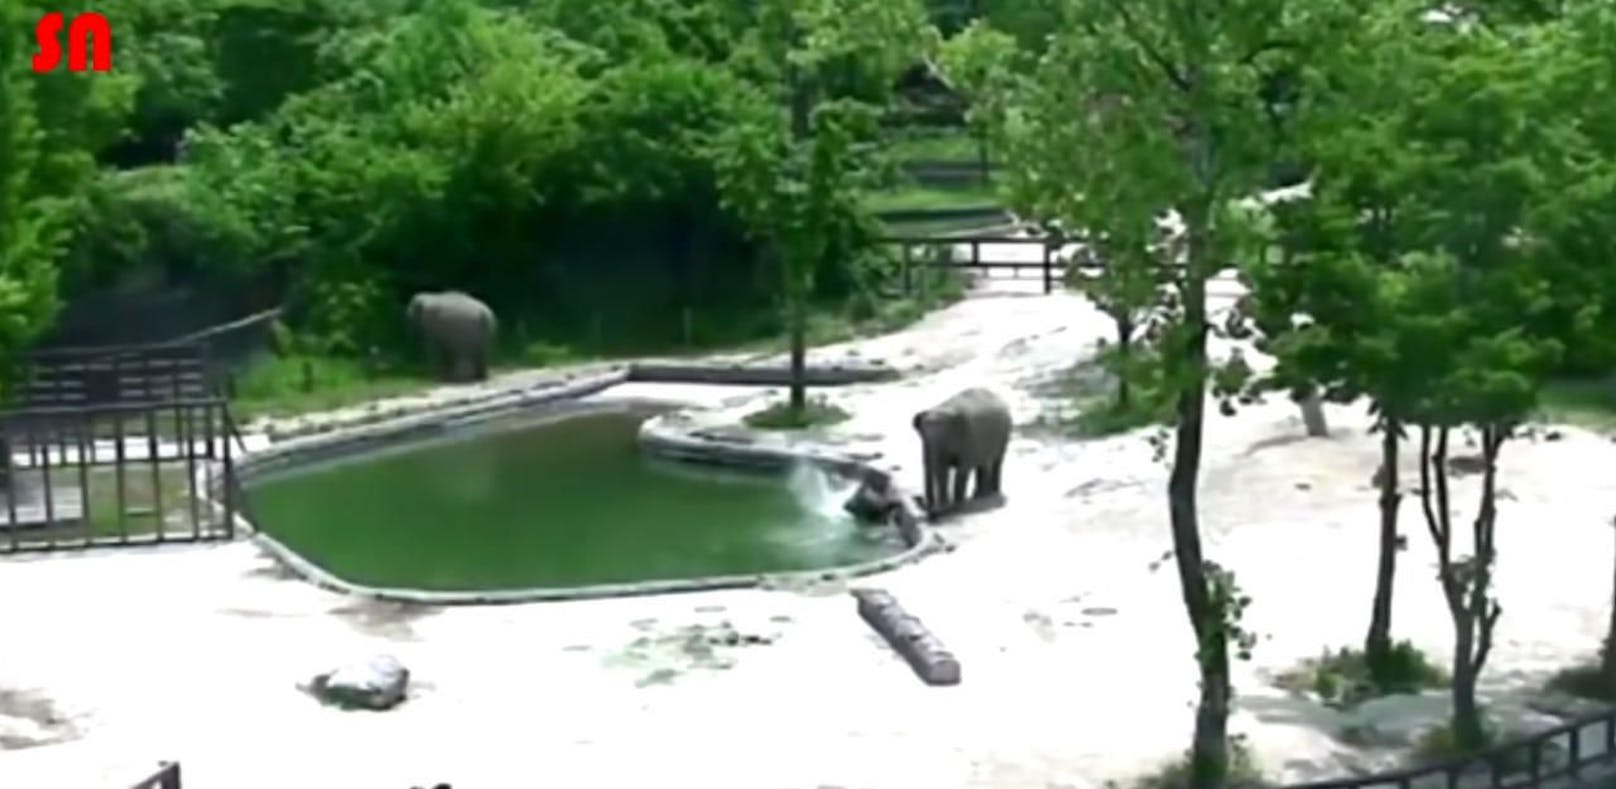 Elefanten retten Junges vor dem Ertrinken